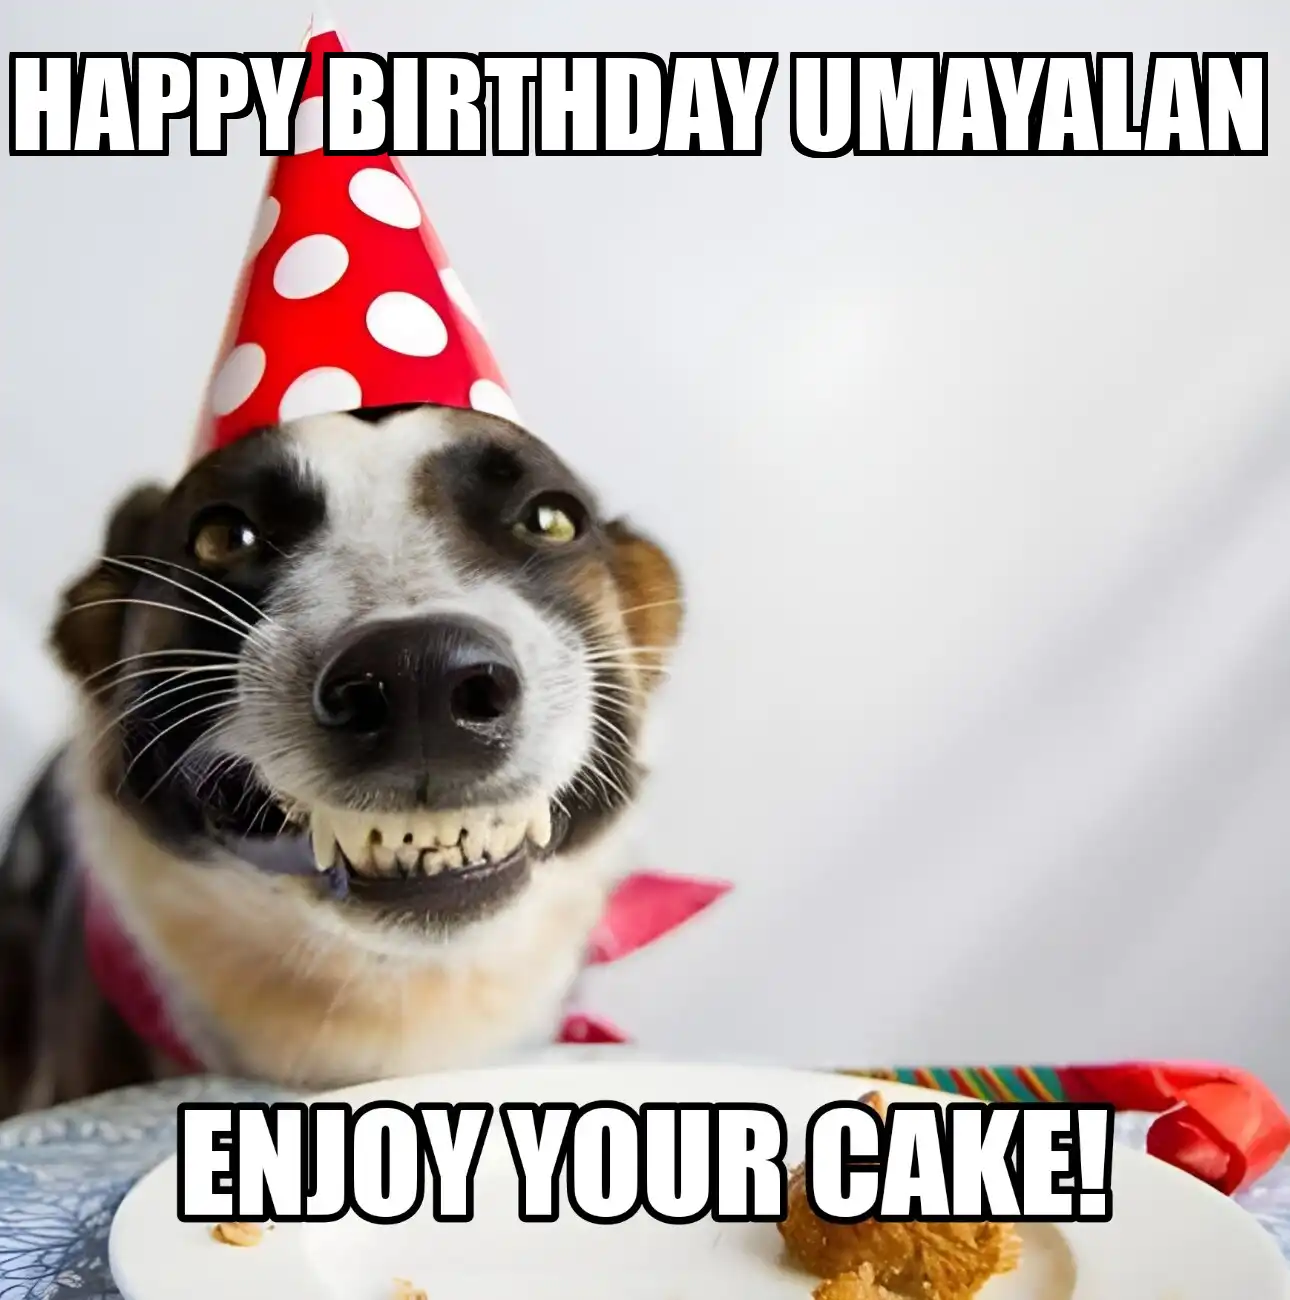 Happy Birthday Umayalan Enjoy Your Cake Dog Meme